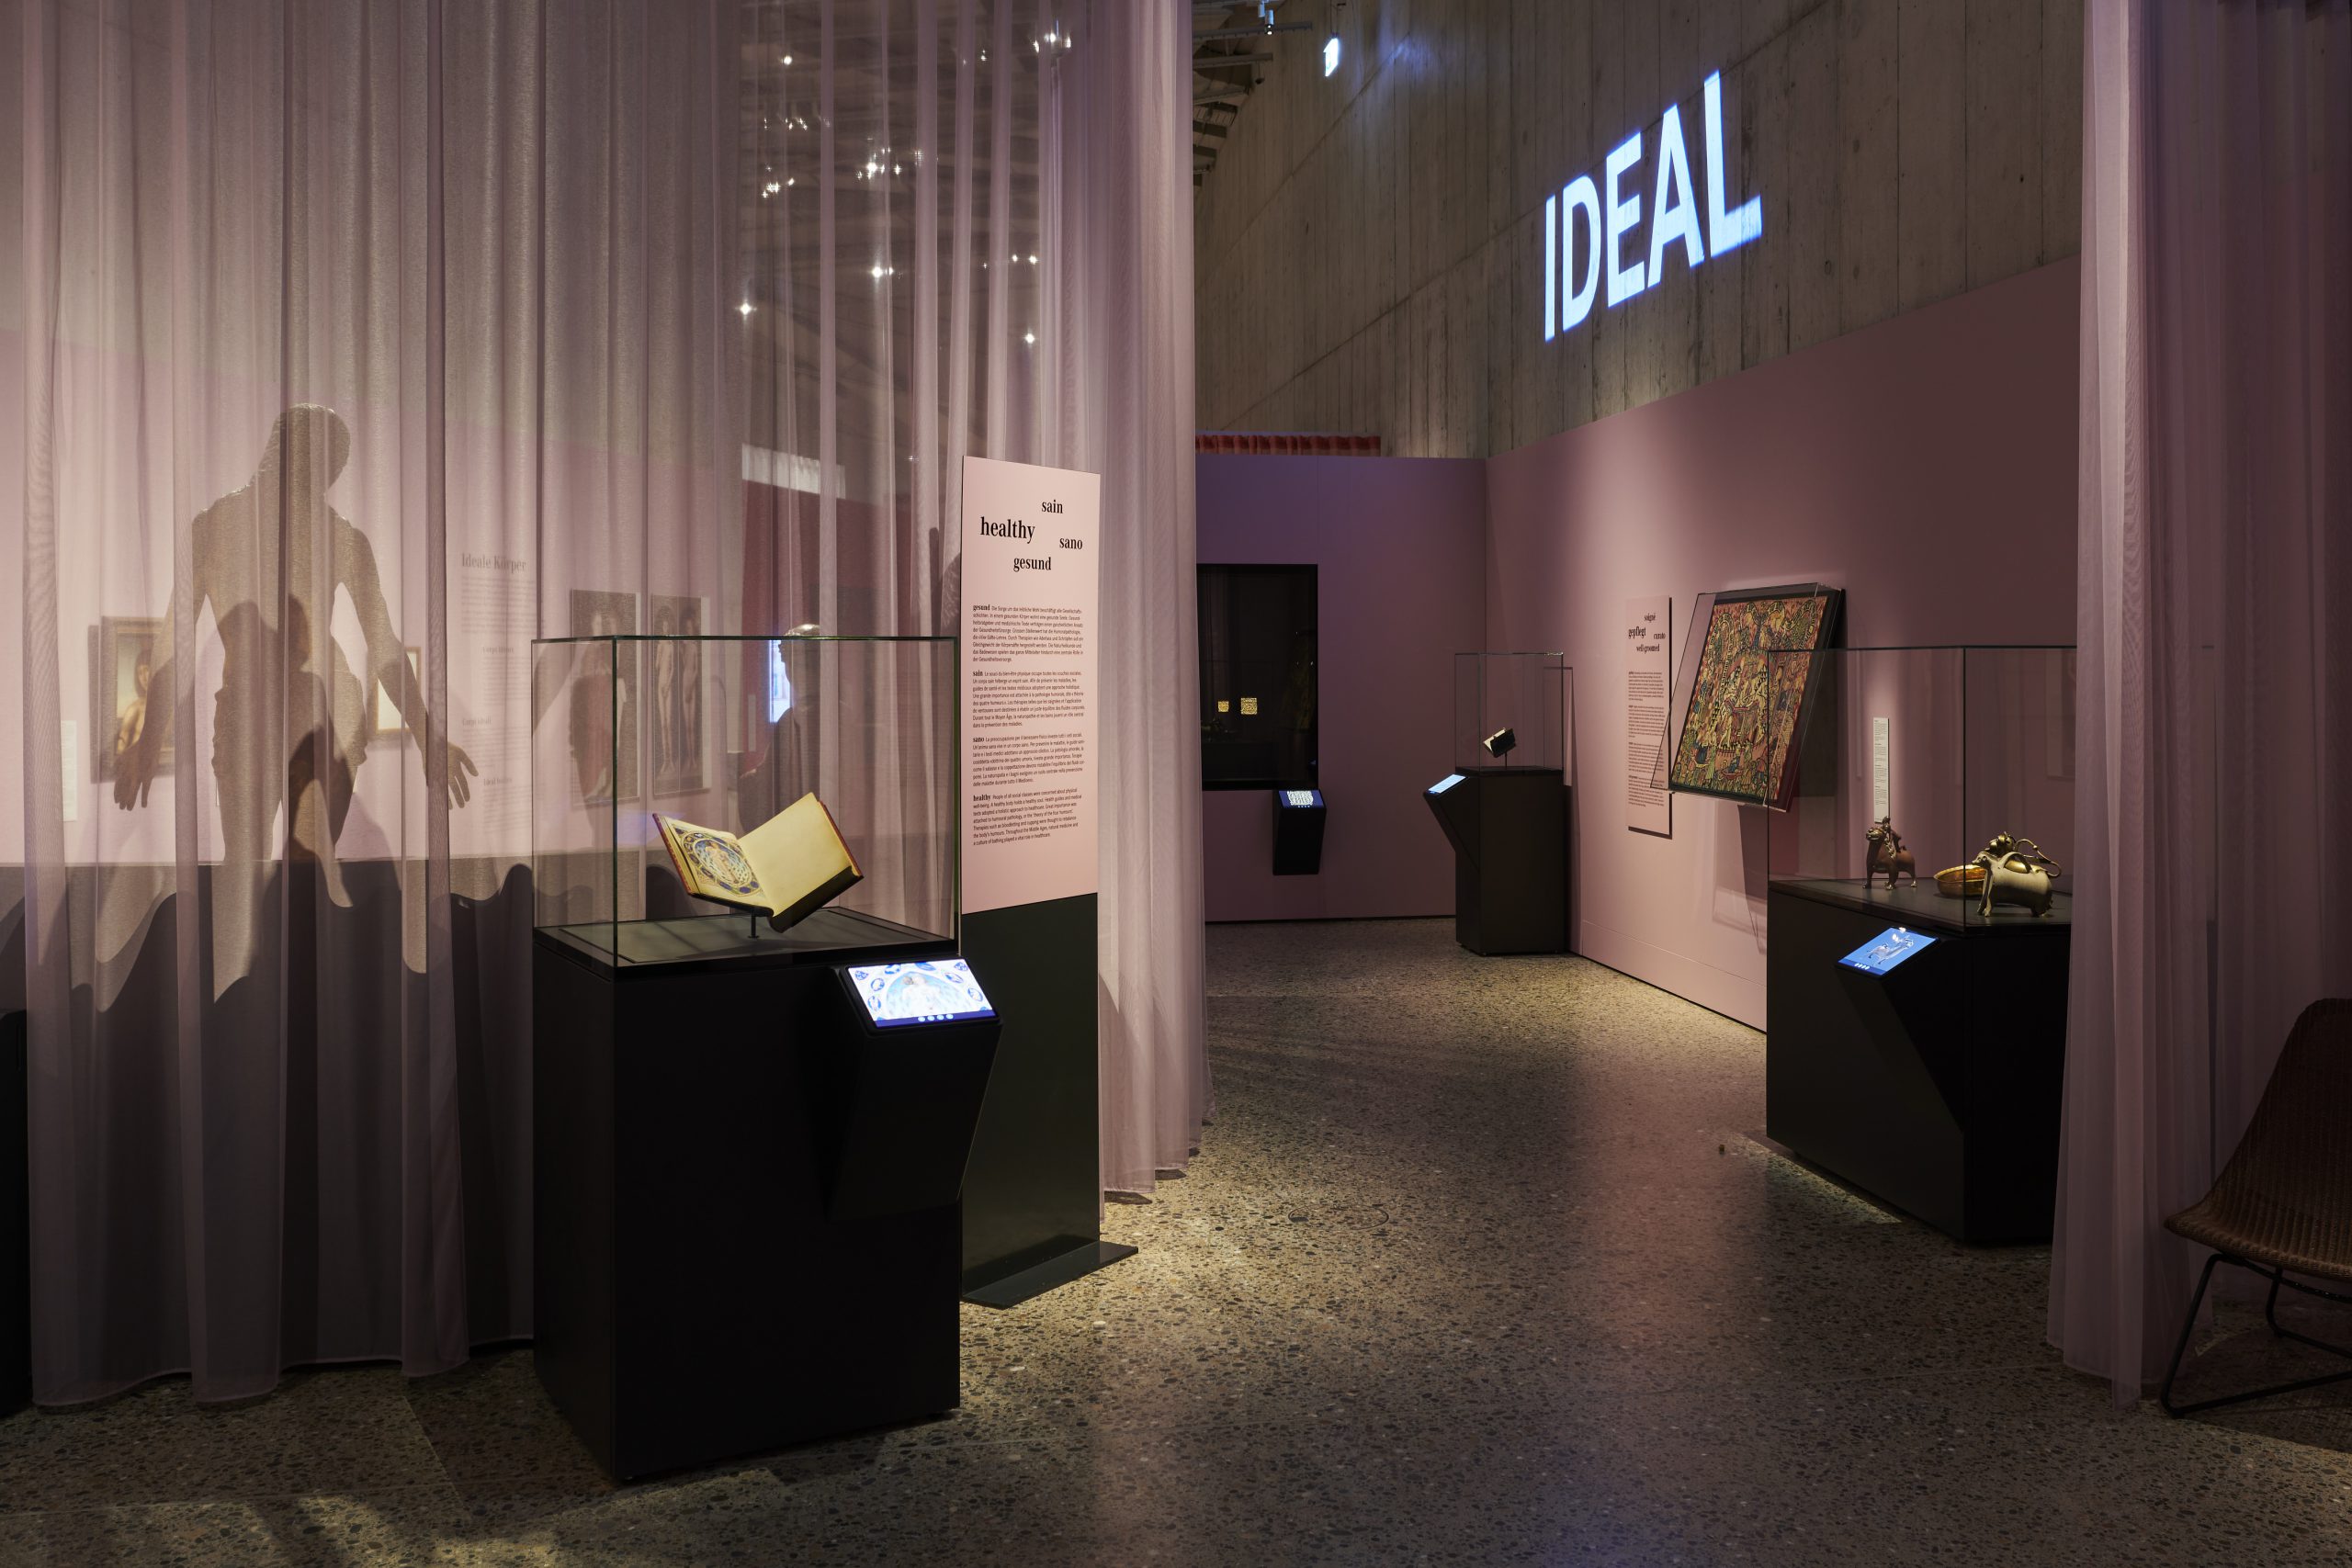 Ausstellung in Museum mit Vorhängen und dunkler Beleuchtung